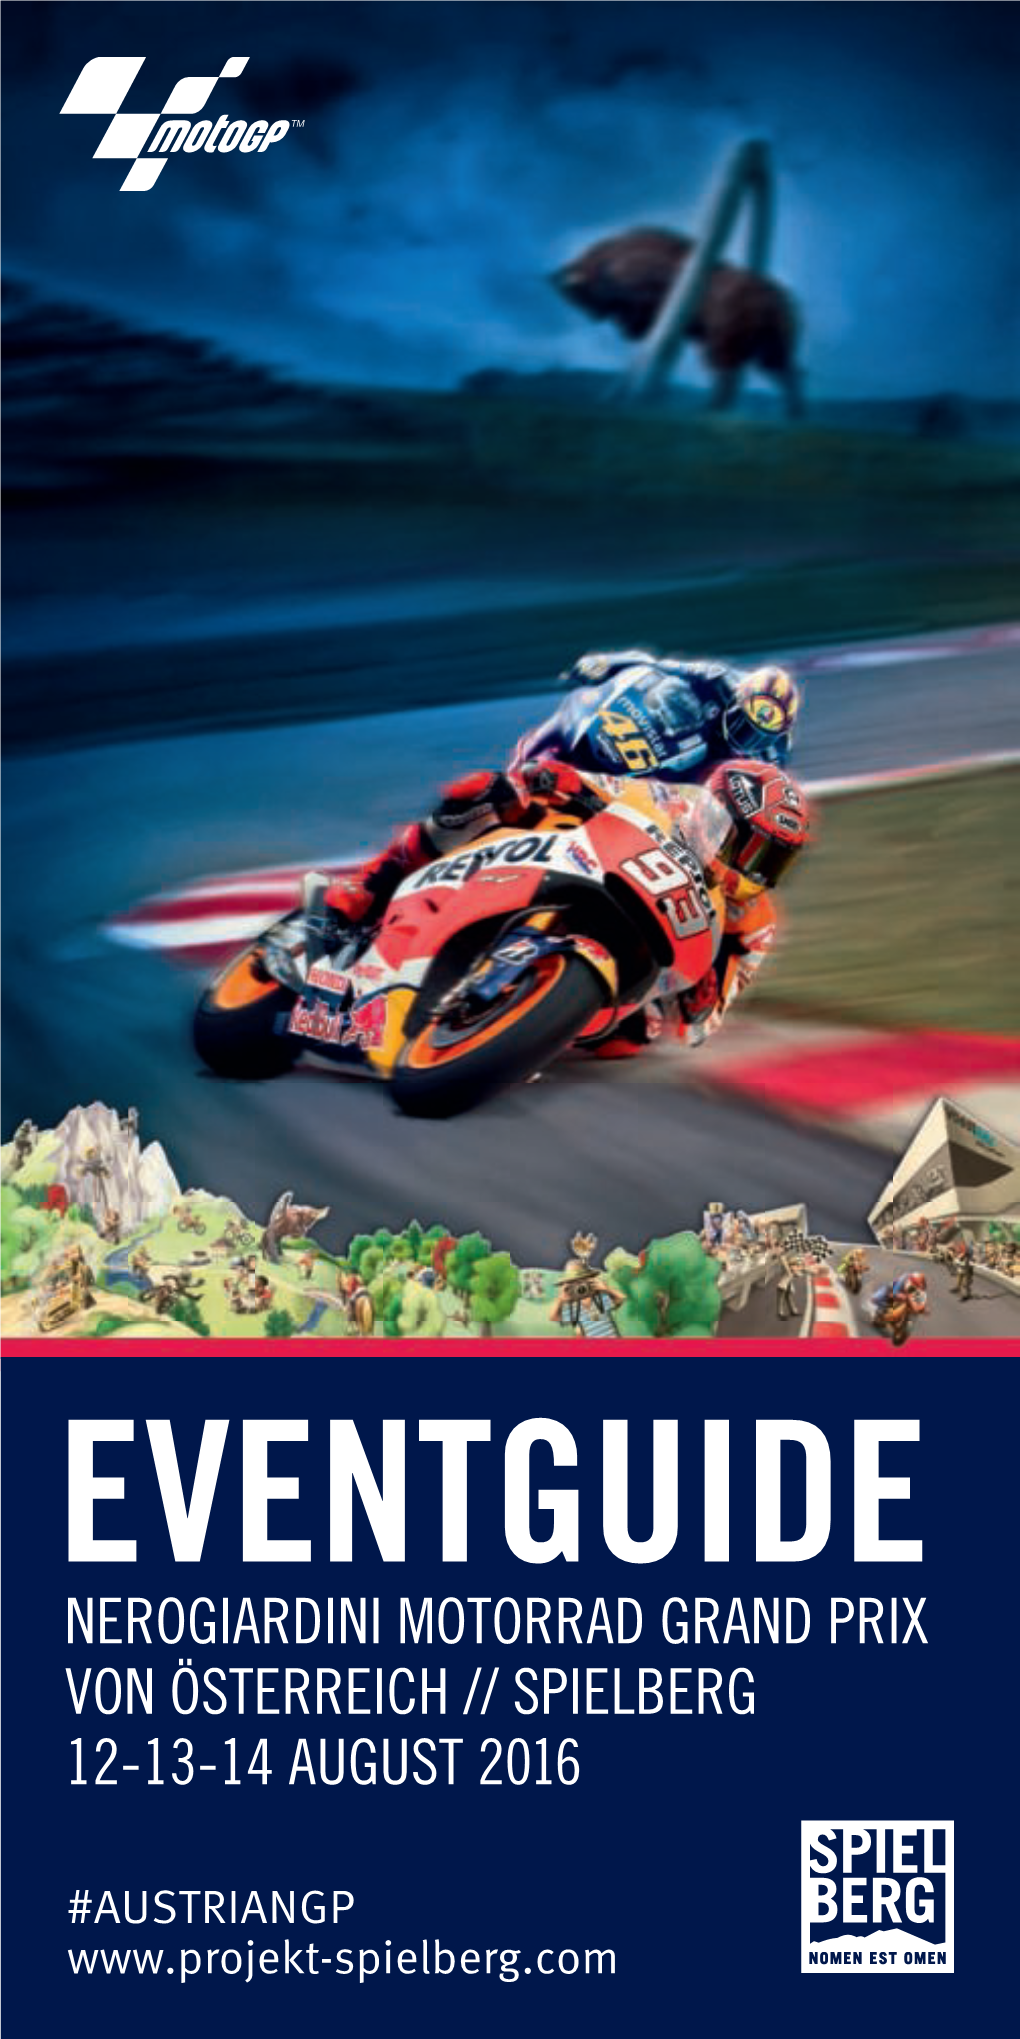 Eventguide Nerogiardini Motorrad Grand Prix Von Österreich // Spielberg 12-13-14 August 2016